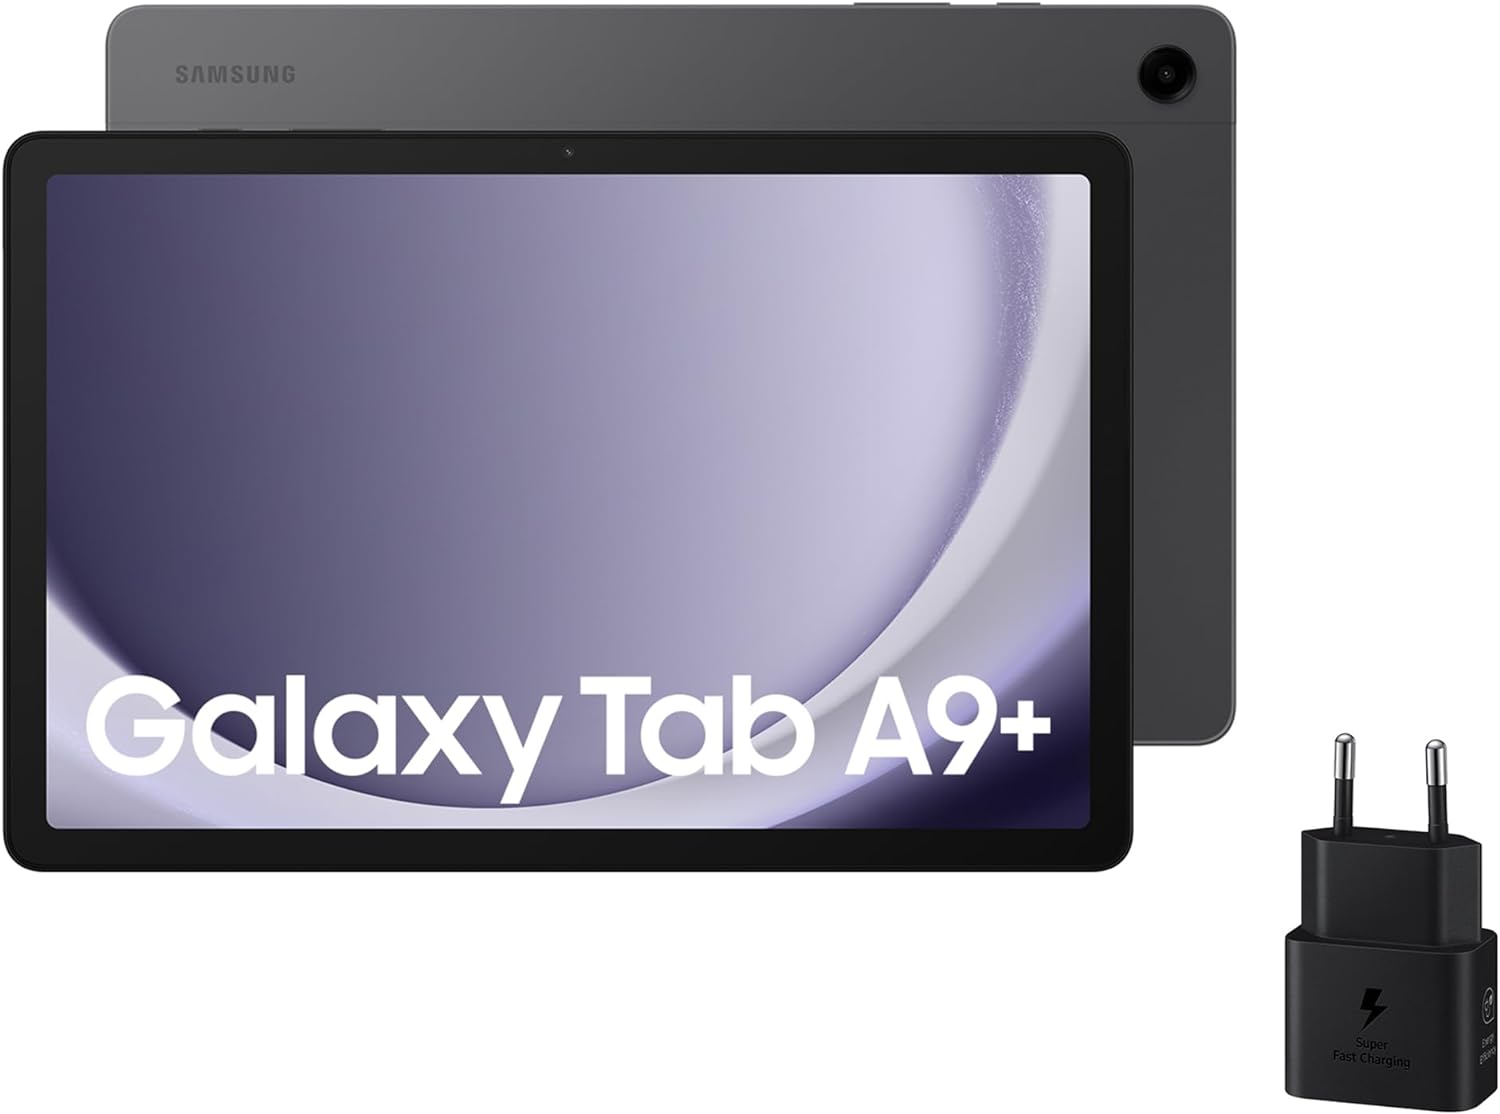 Samsung Galaxy Tab A9 Plus vs Samsung Galaxy Tab A9